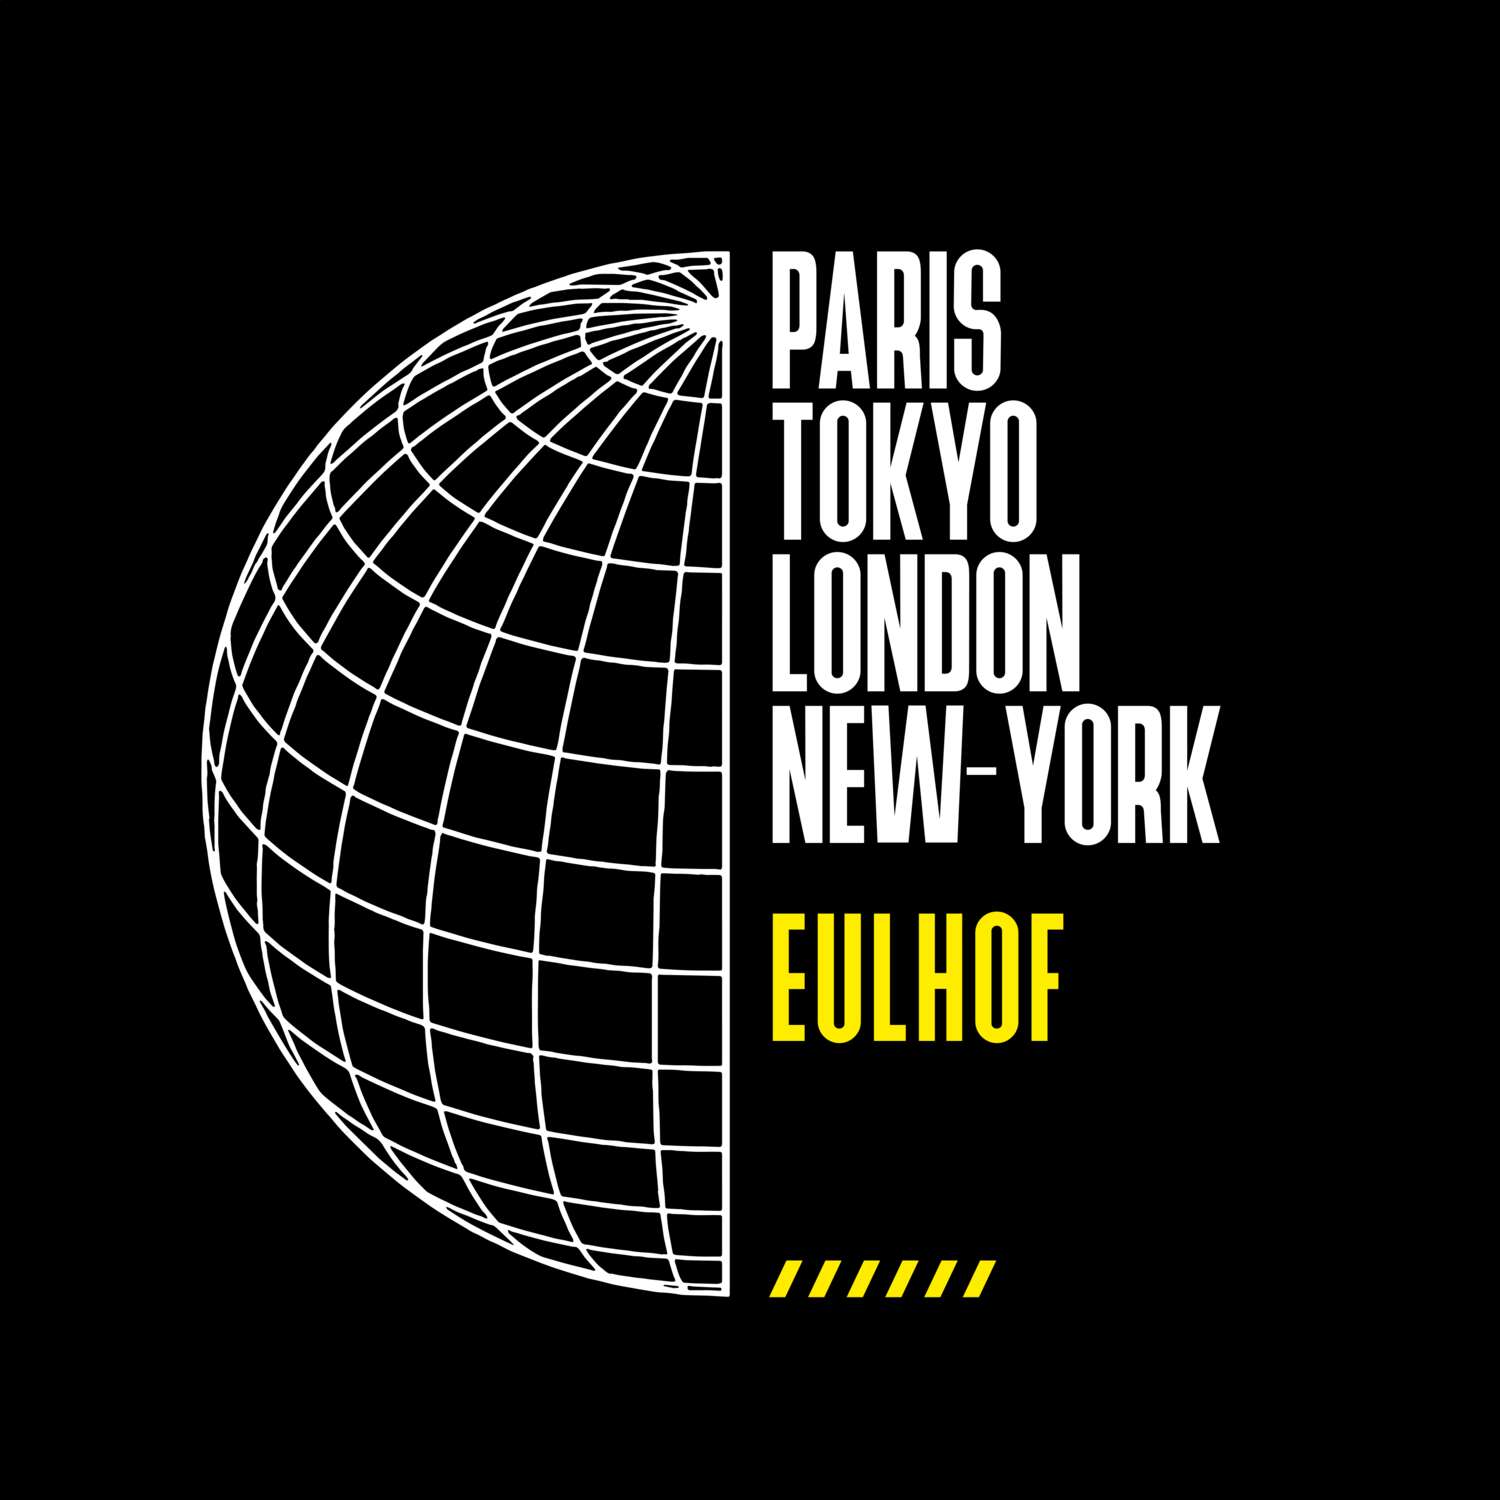 Eulhof T-Shirt »Paris Tokyo London«